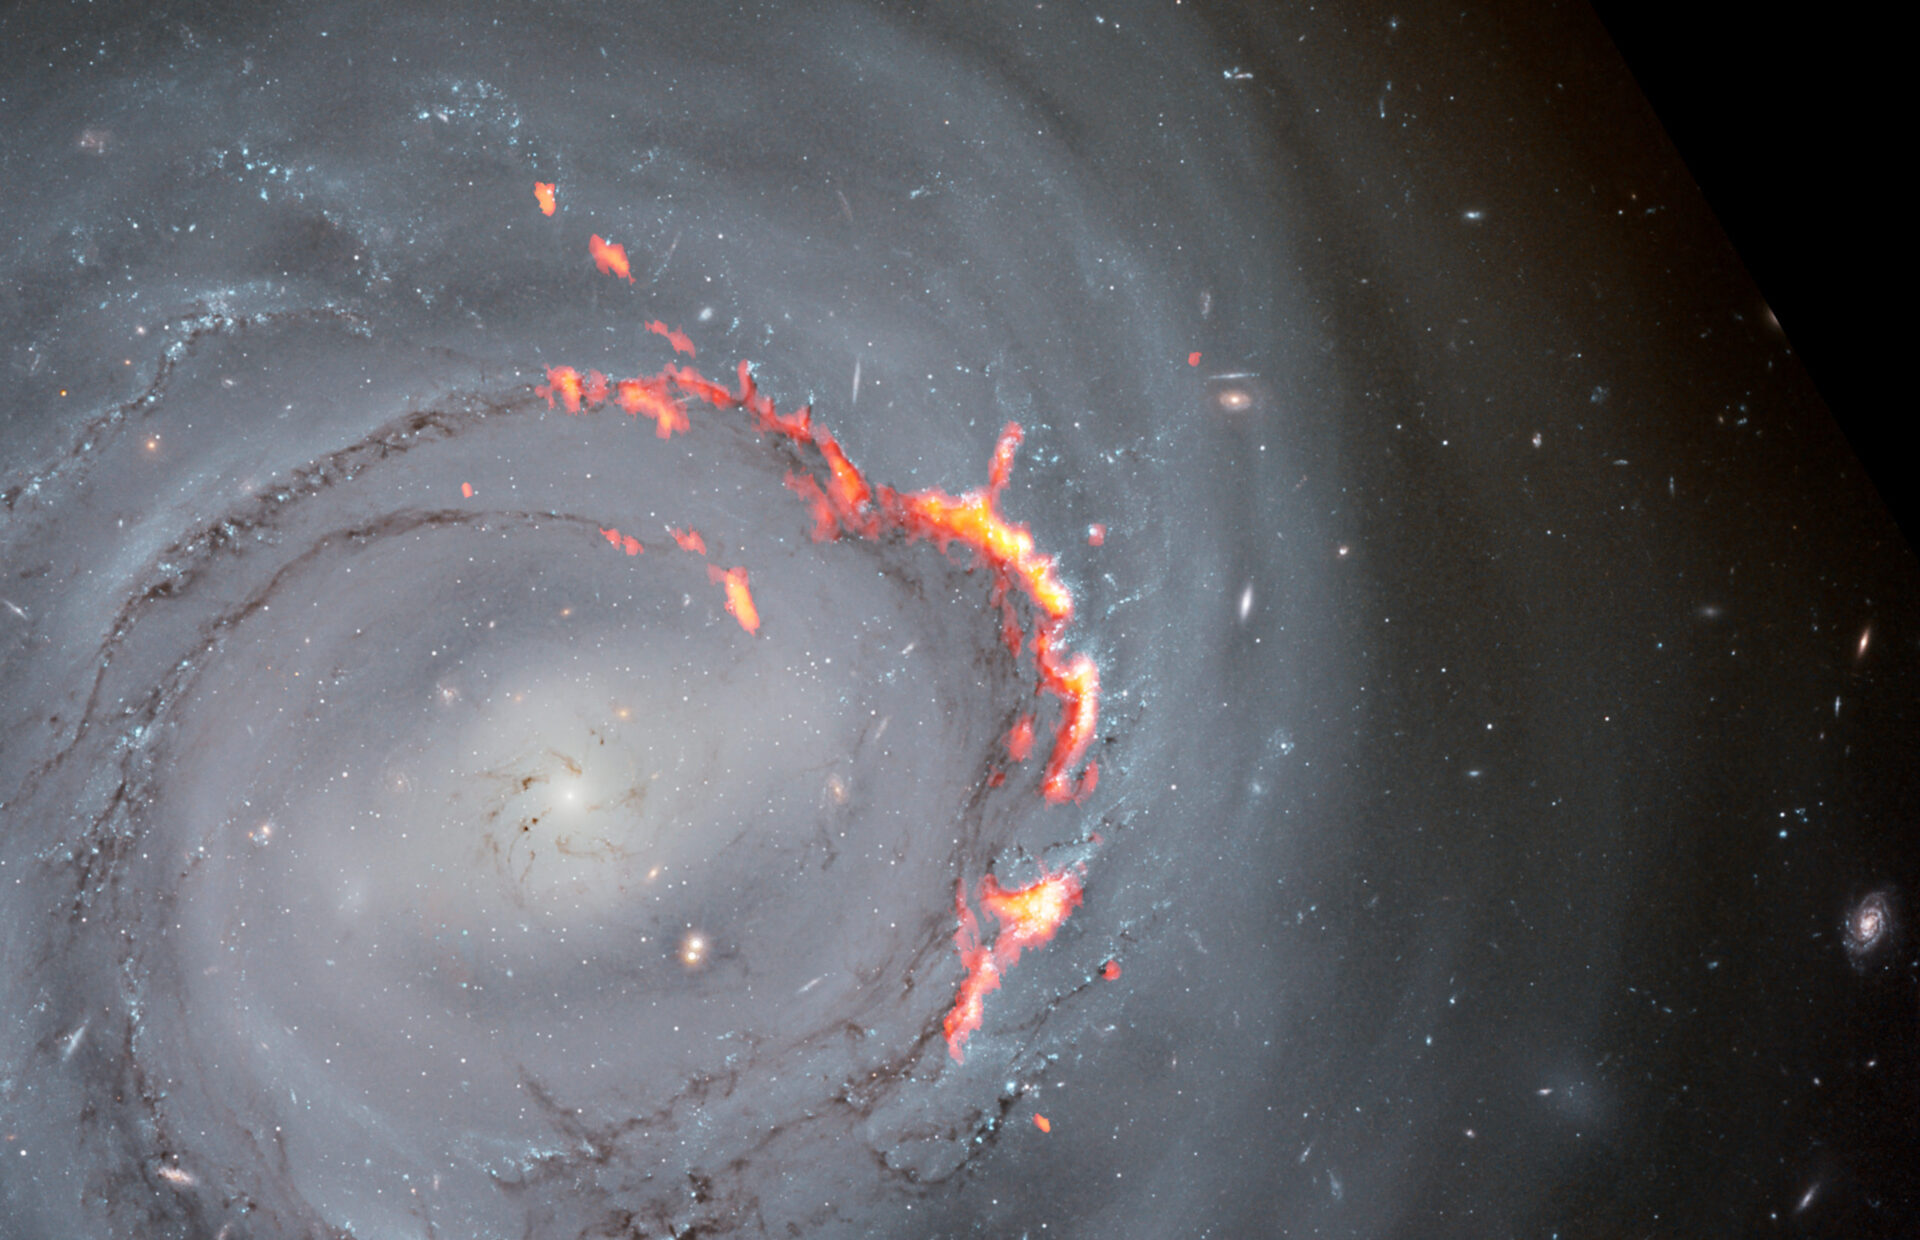 <p>Acercamiento de una imagen compuesta de NGC 4921 obtenida por ALMA (rojo y naranja) y el telescopio espacial Hubble (imagen óptica). En esta imagen se destacan las estructuras filamentosas causadas por el fenómeno de despojo por presión. Se trata de un proceso que desplaza el gas de una galaxia, despojándola del material necesario para formar nuevas estrellas.  Según un nuevo estudio, en vez de ser expulsado de la galaxia, parte de ese material podría verse sometido a un proceso de reacreción, posiblemente por efecto de campos magnéticos, lo cual ralentizaría la extinción de la galaxia.</p>
<p>Créditos: ALMA (ESO/NAOJ/NRAO)/S. Dagnello (NRAO), NASA/ESA/Hubble, K. Cook (LLNL), L. Shatz</p>
